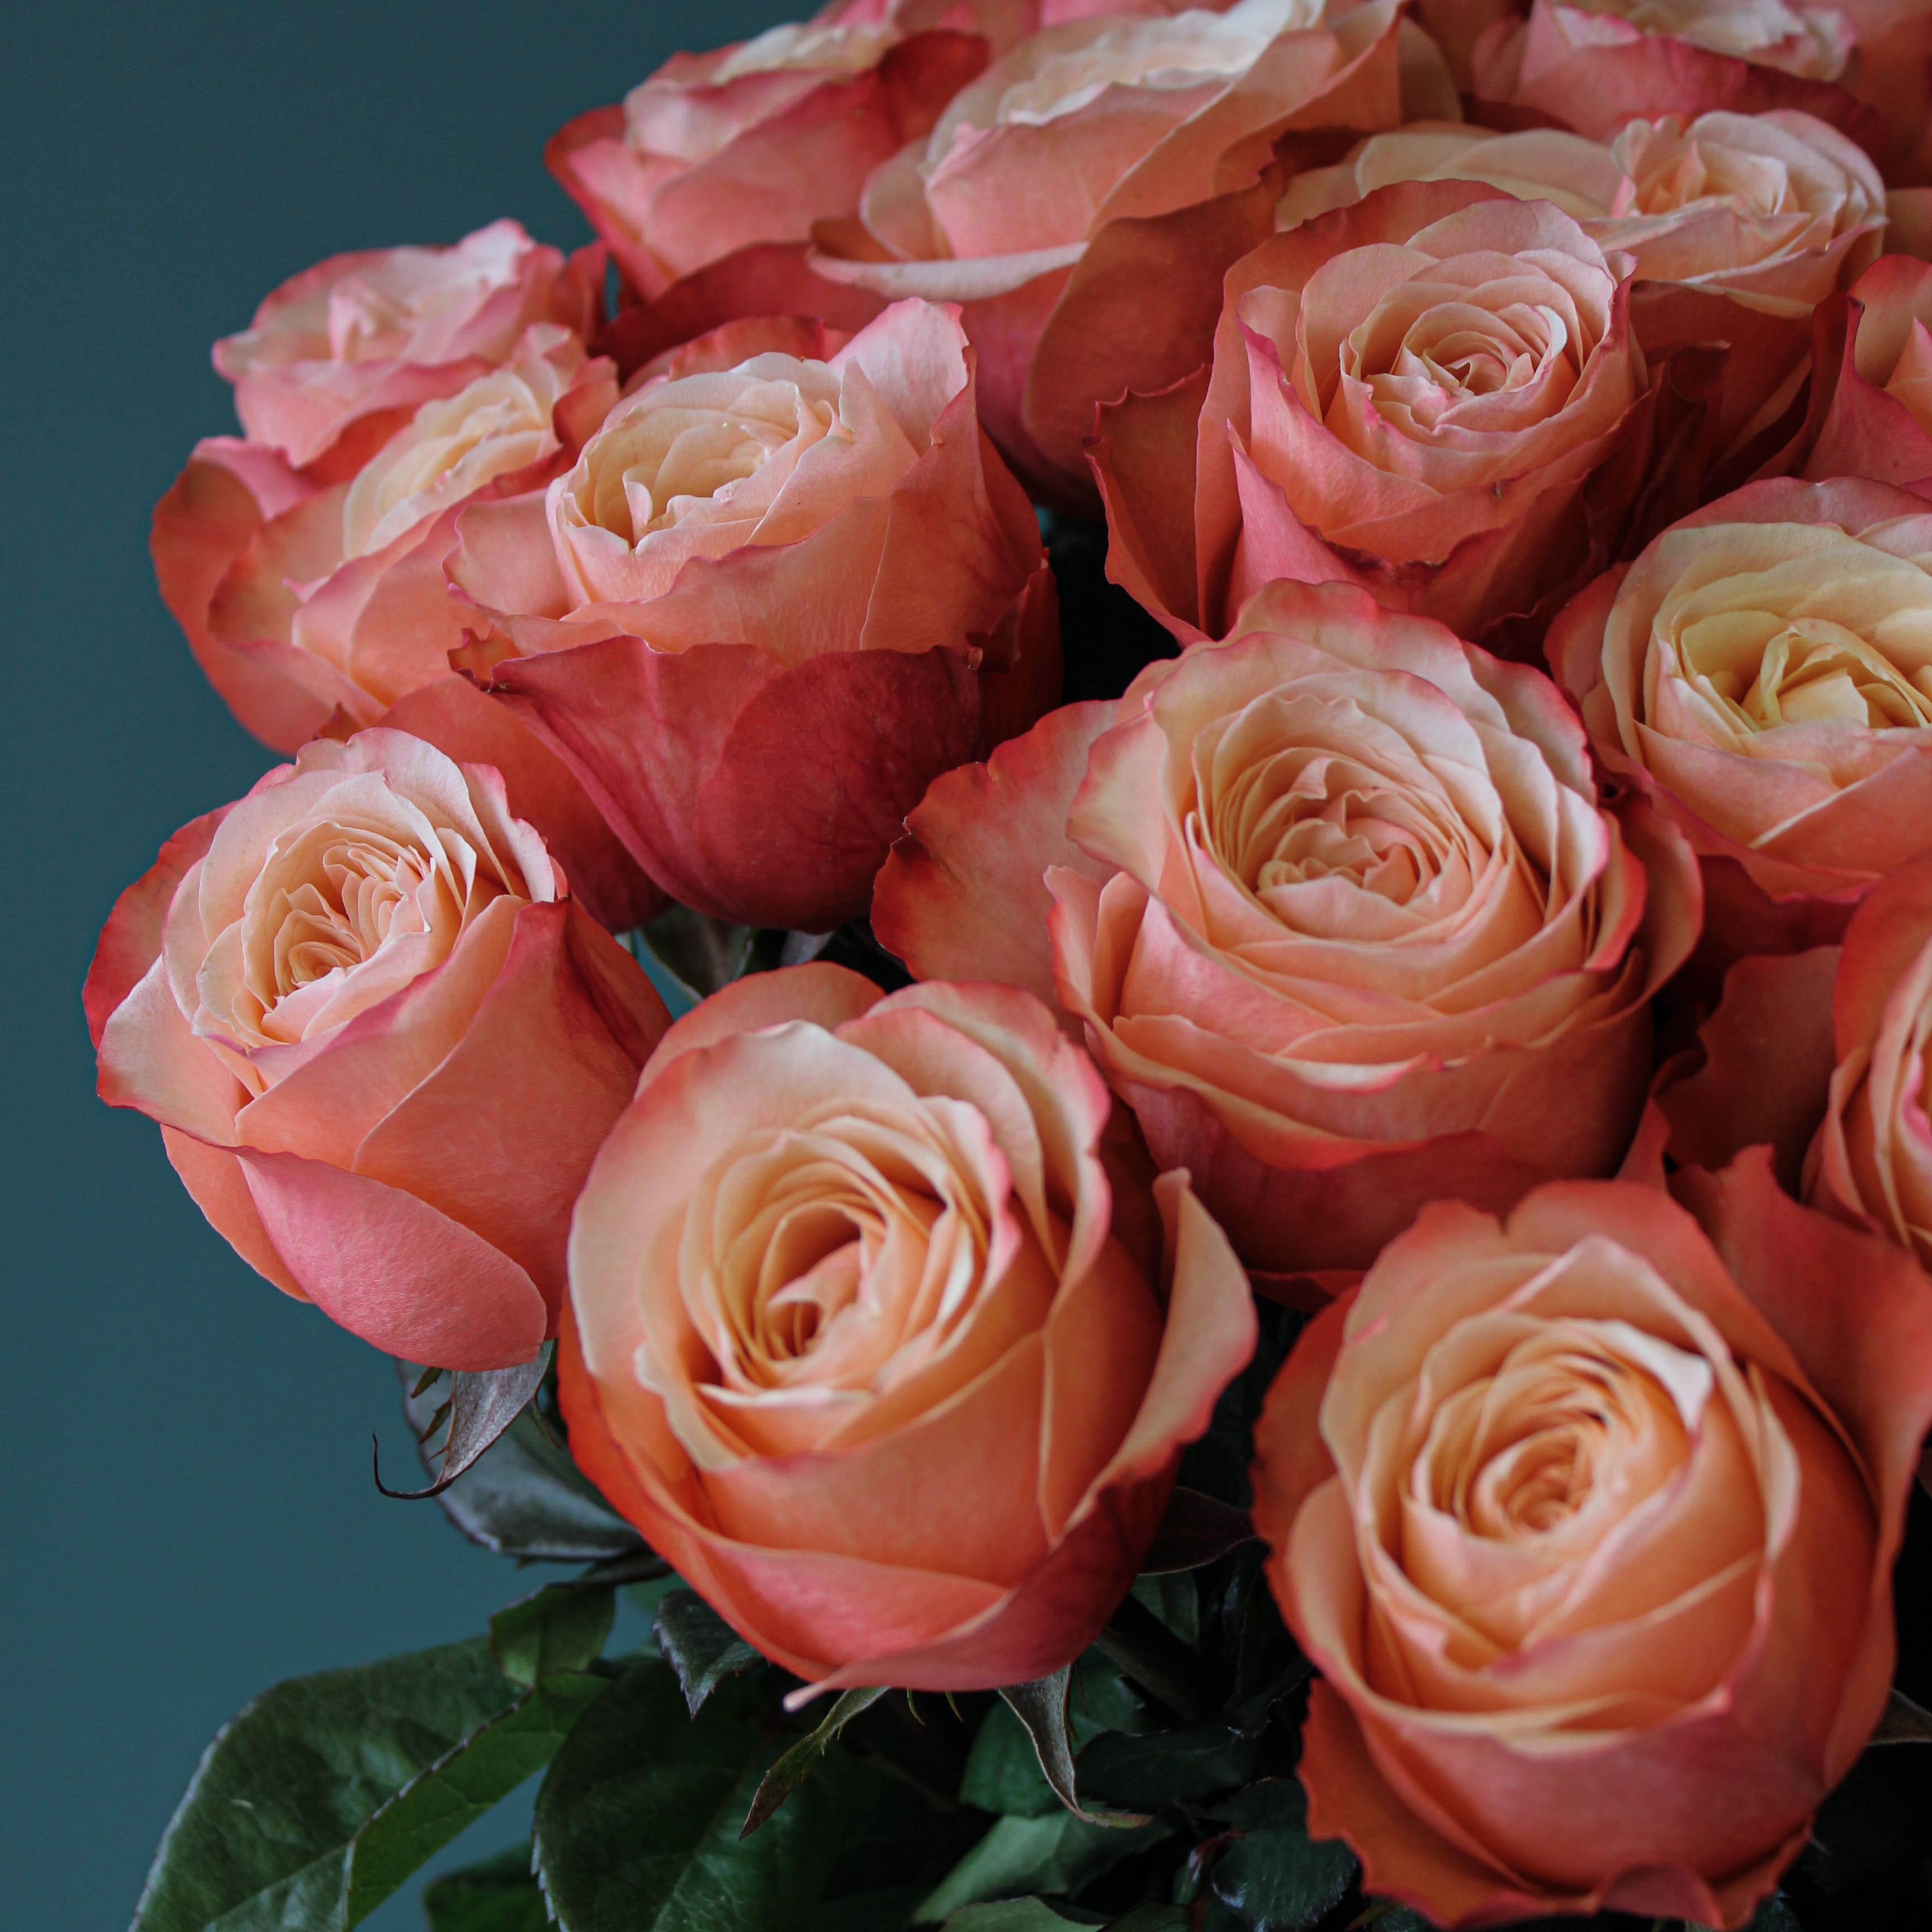 25 пионовидных персиковых роз Эквадор